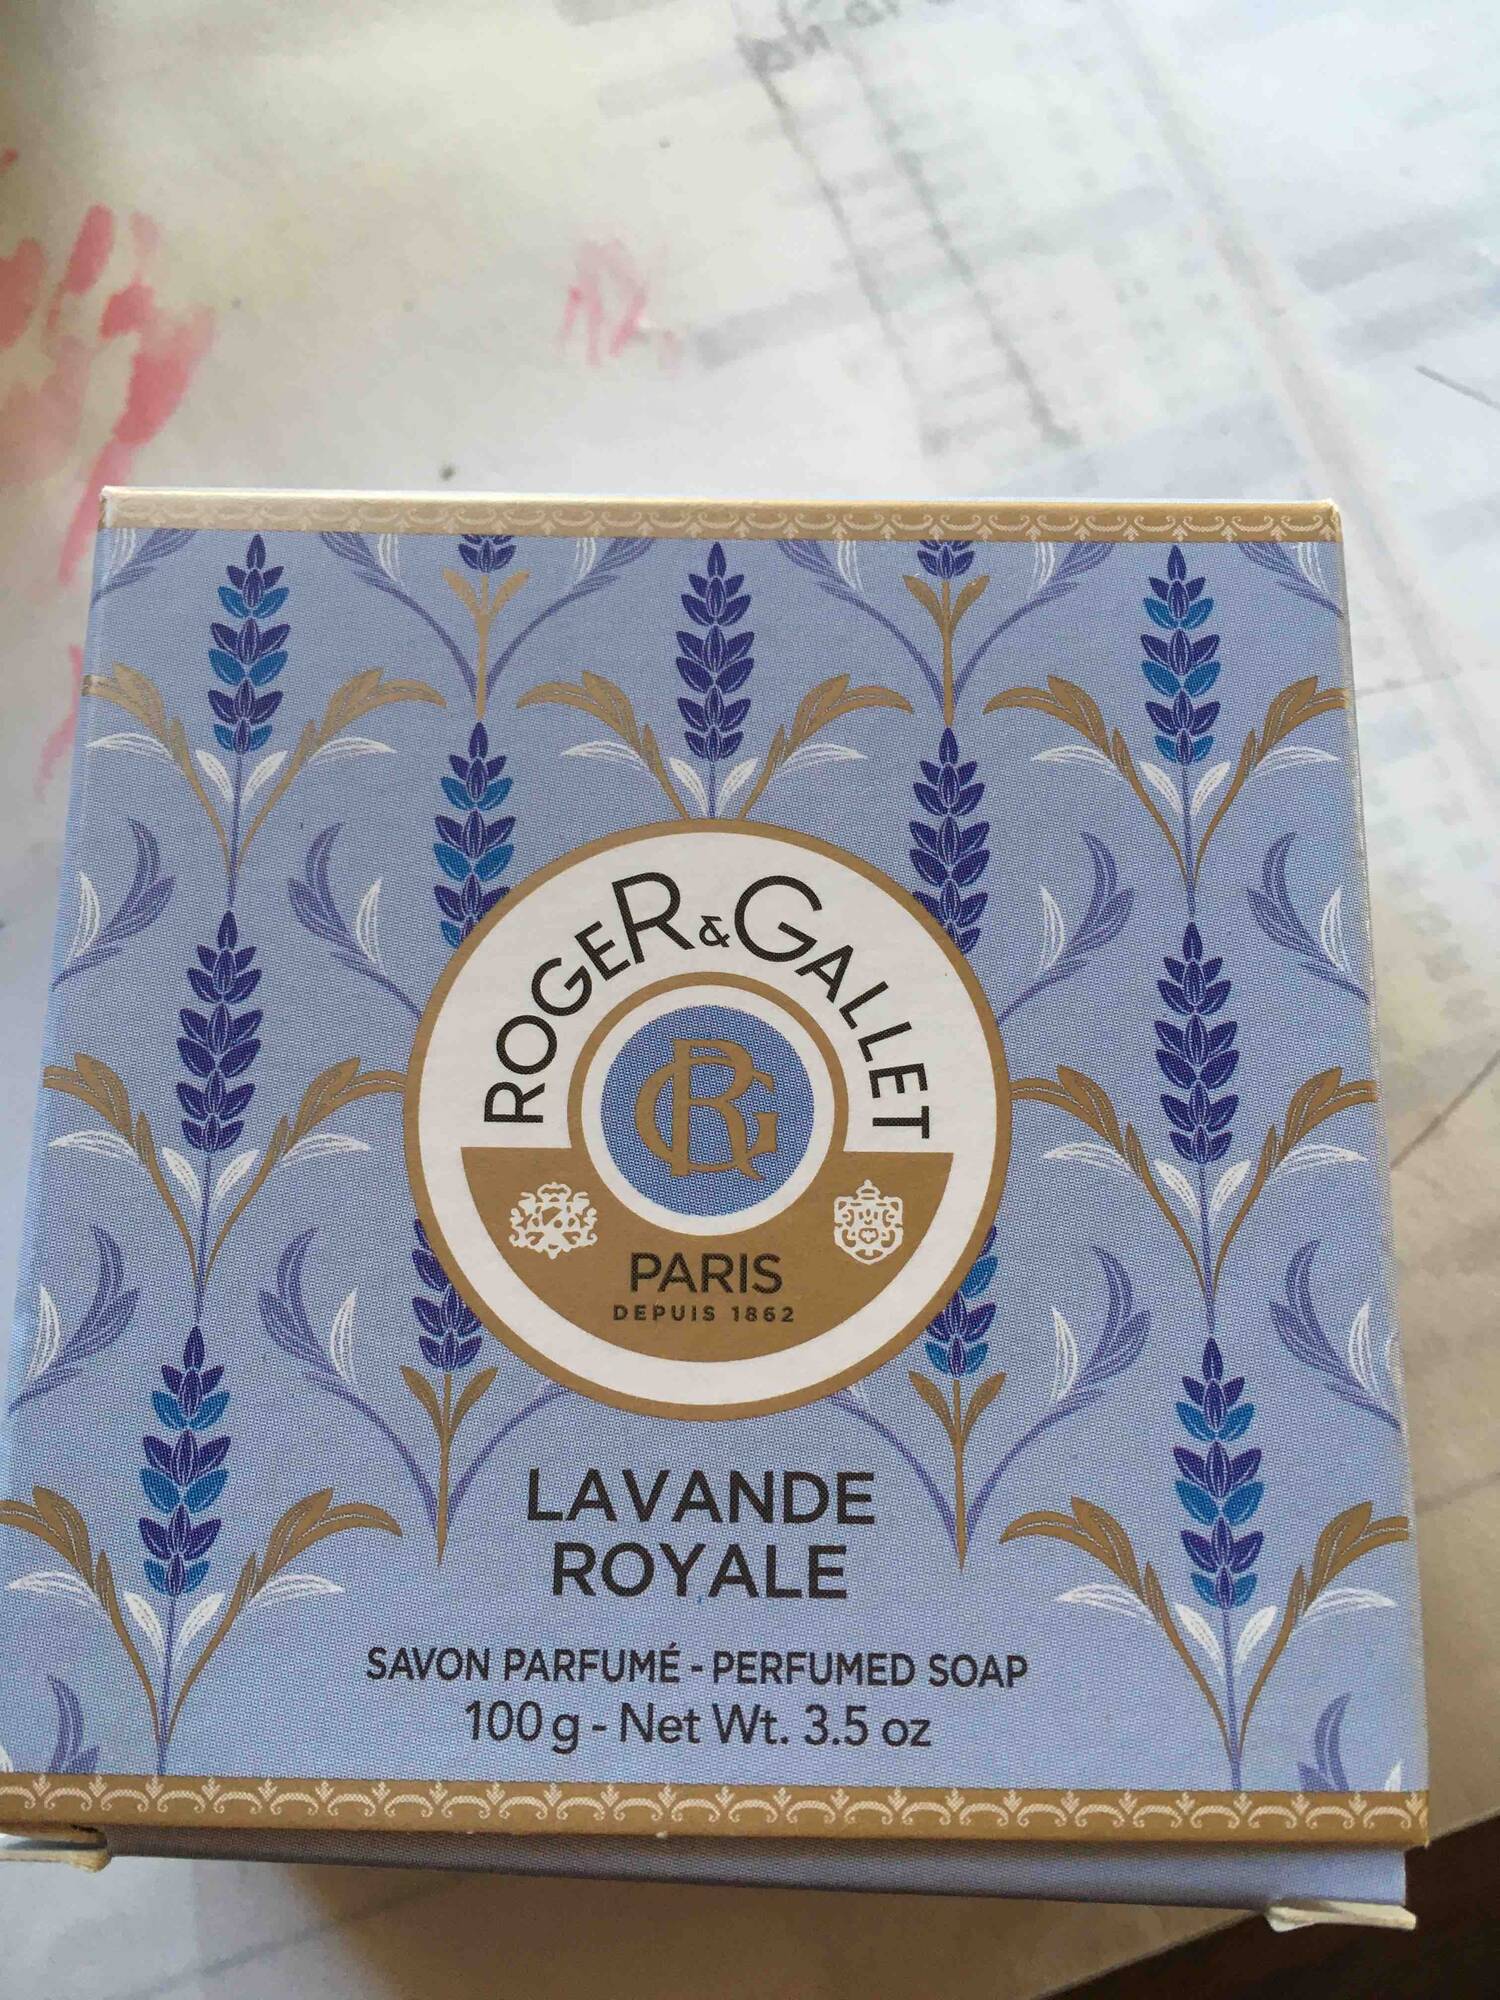 ROGER & GALLET - Lavande royale - Savon parfumé